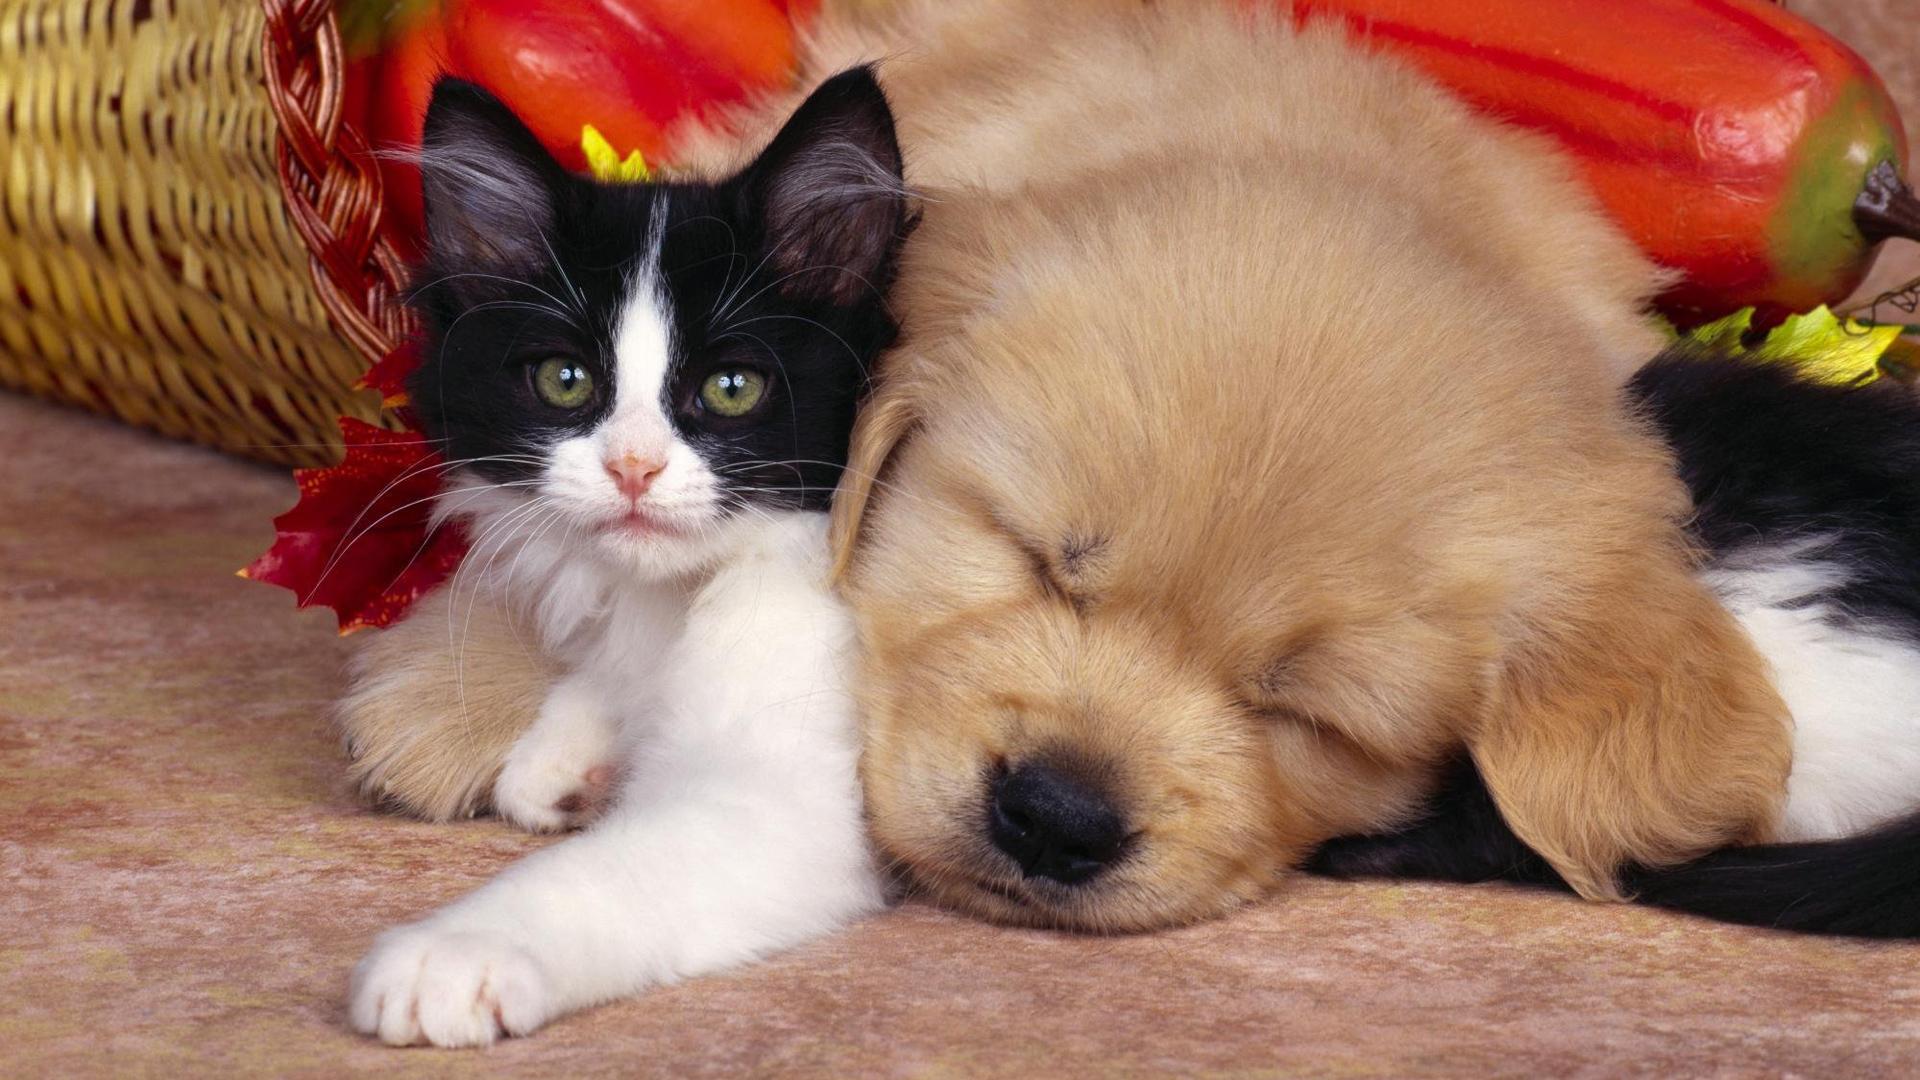 Cute Funny Dog And Cat Pics Wallpaper Cub Hd, HD